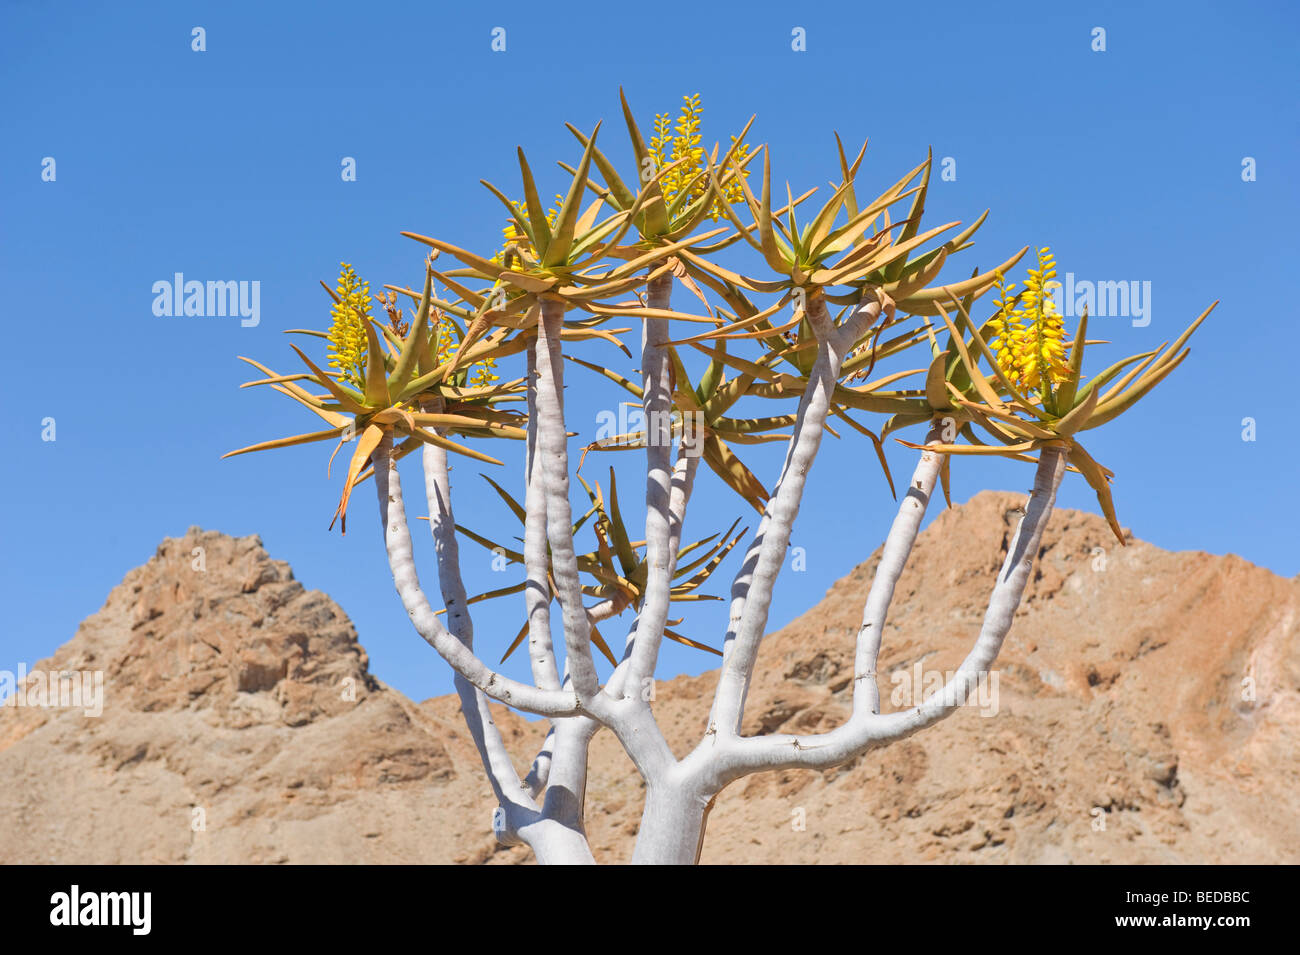 Quiver Tree (ALOE) dichtoma dans les montagnes autour de Rosh Pinah, Namibie, Afrique Banque D'Images